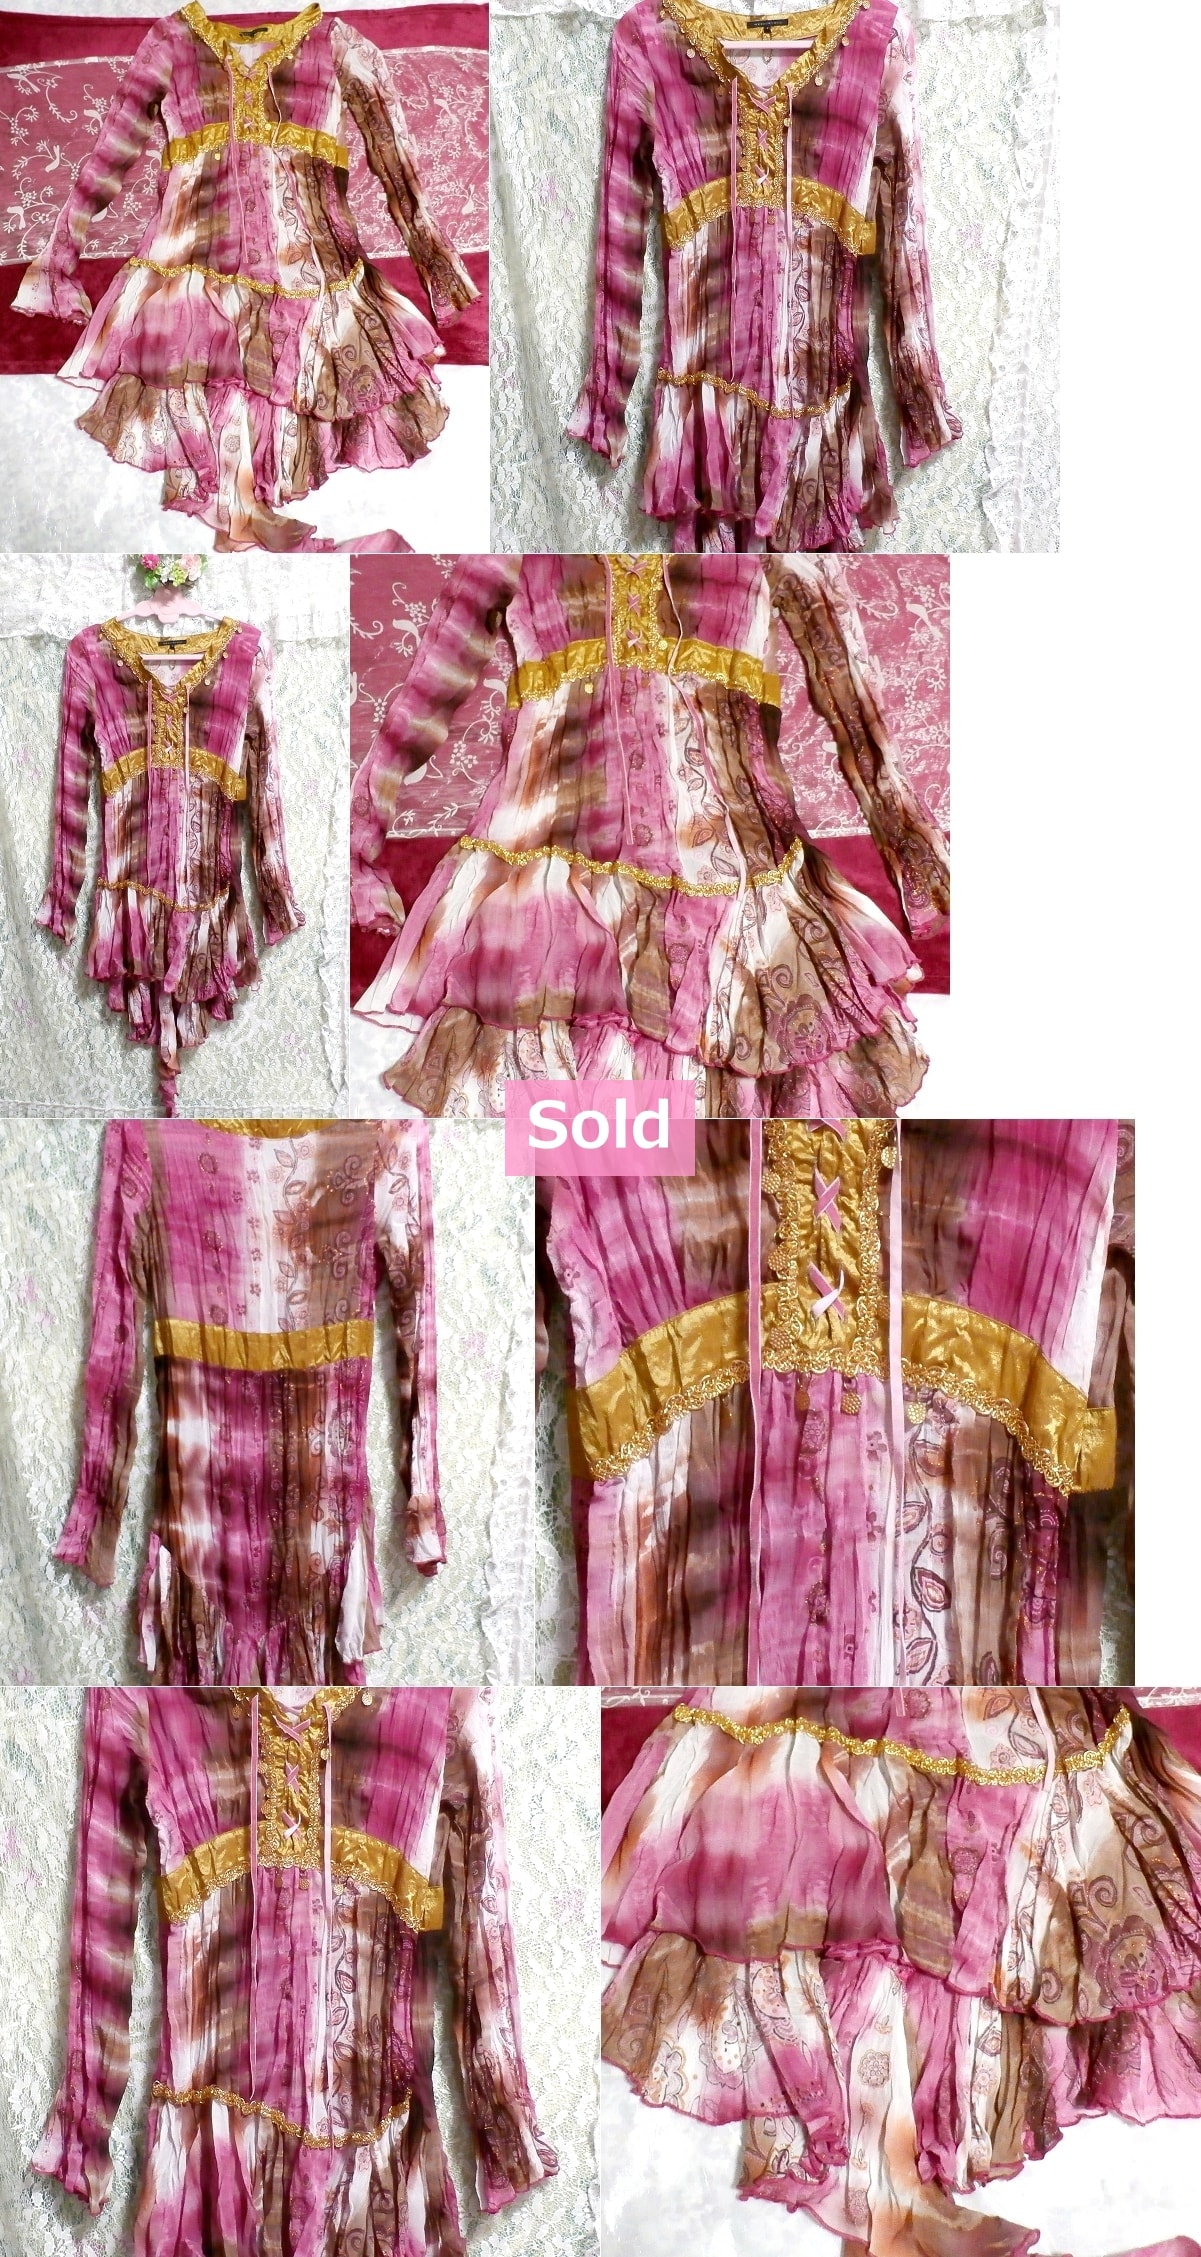 MERCURYDUO Юбка с оборками и пурпурно-розовым подолом с красивым рисунком, туника / топы / сплошное платье, туника и короткие рукава, размер M